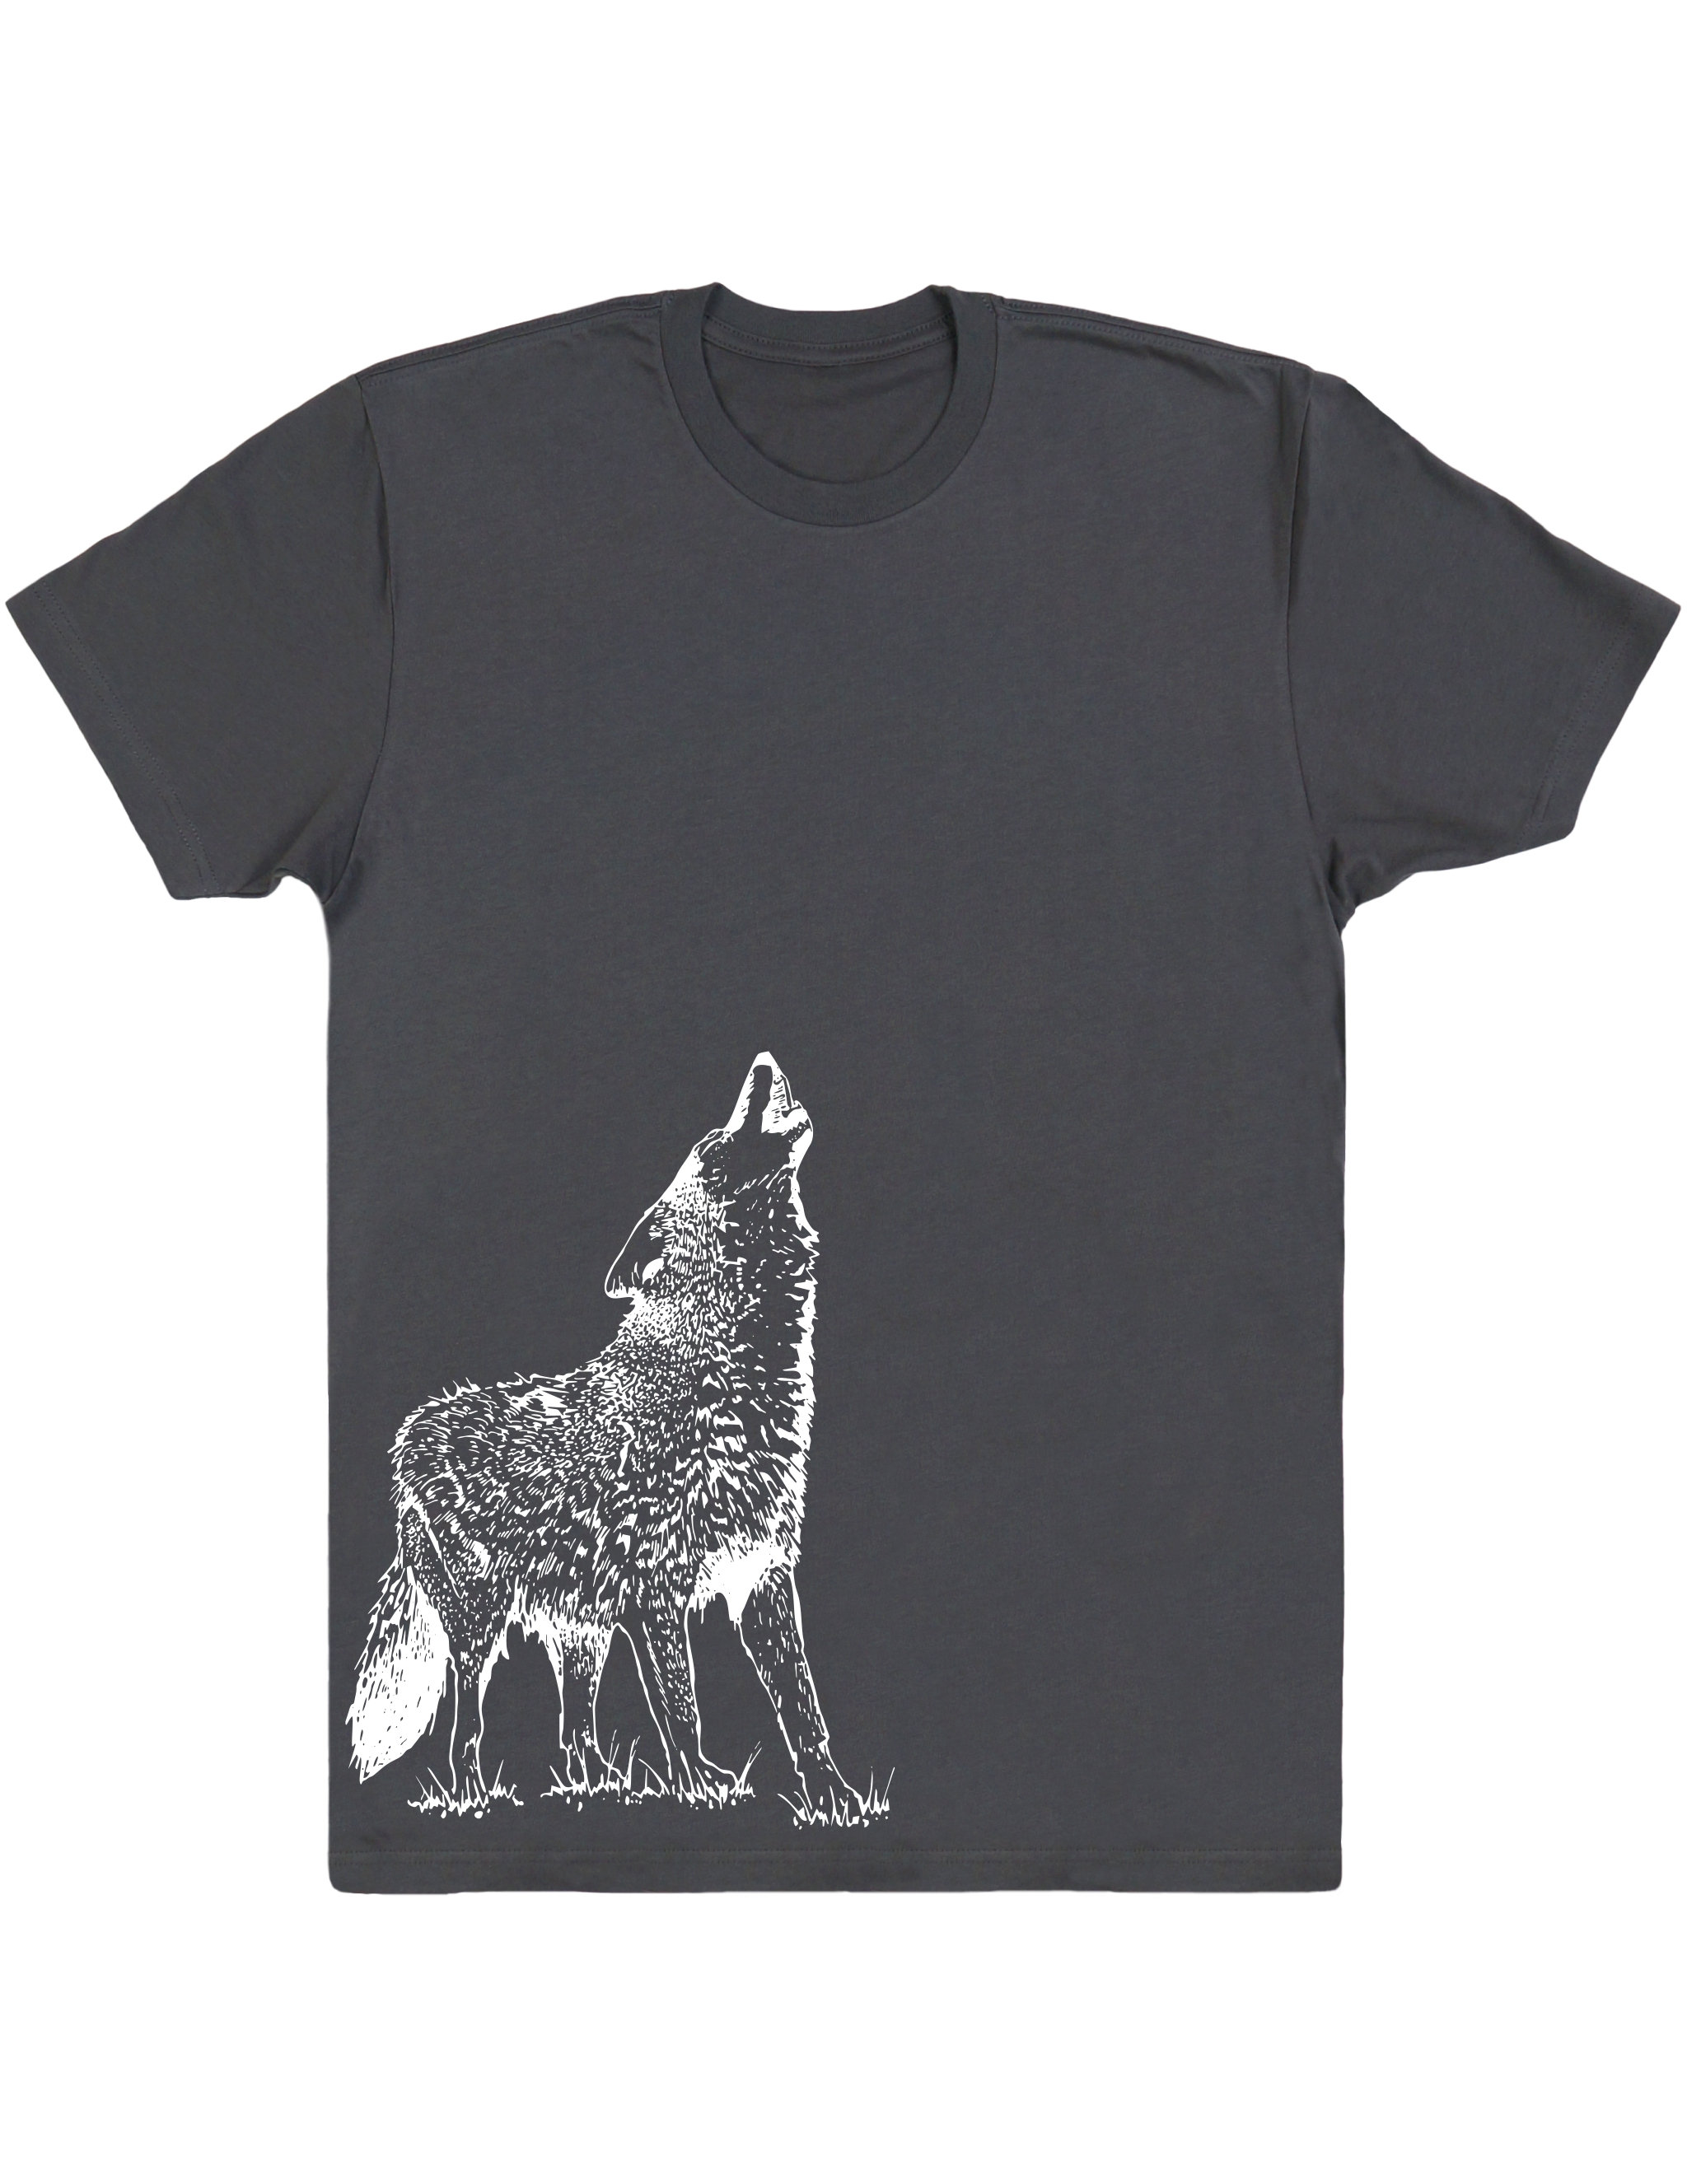 Howling Wolf Men's Cotton T-Shirt Wolf Shirt Wolf Tee Wolf